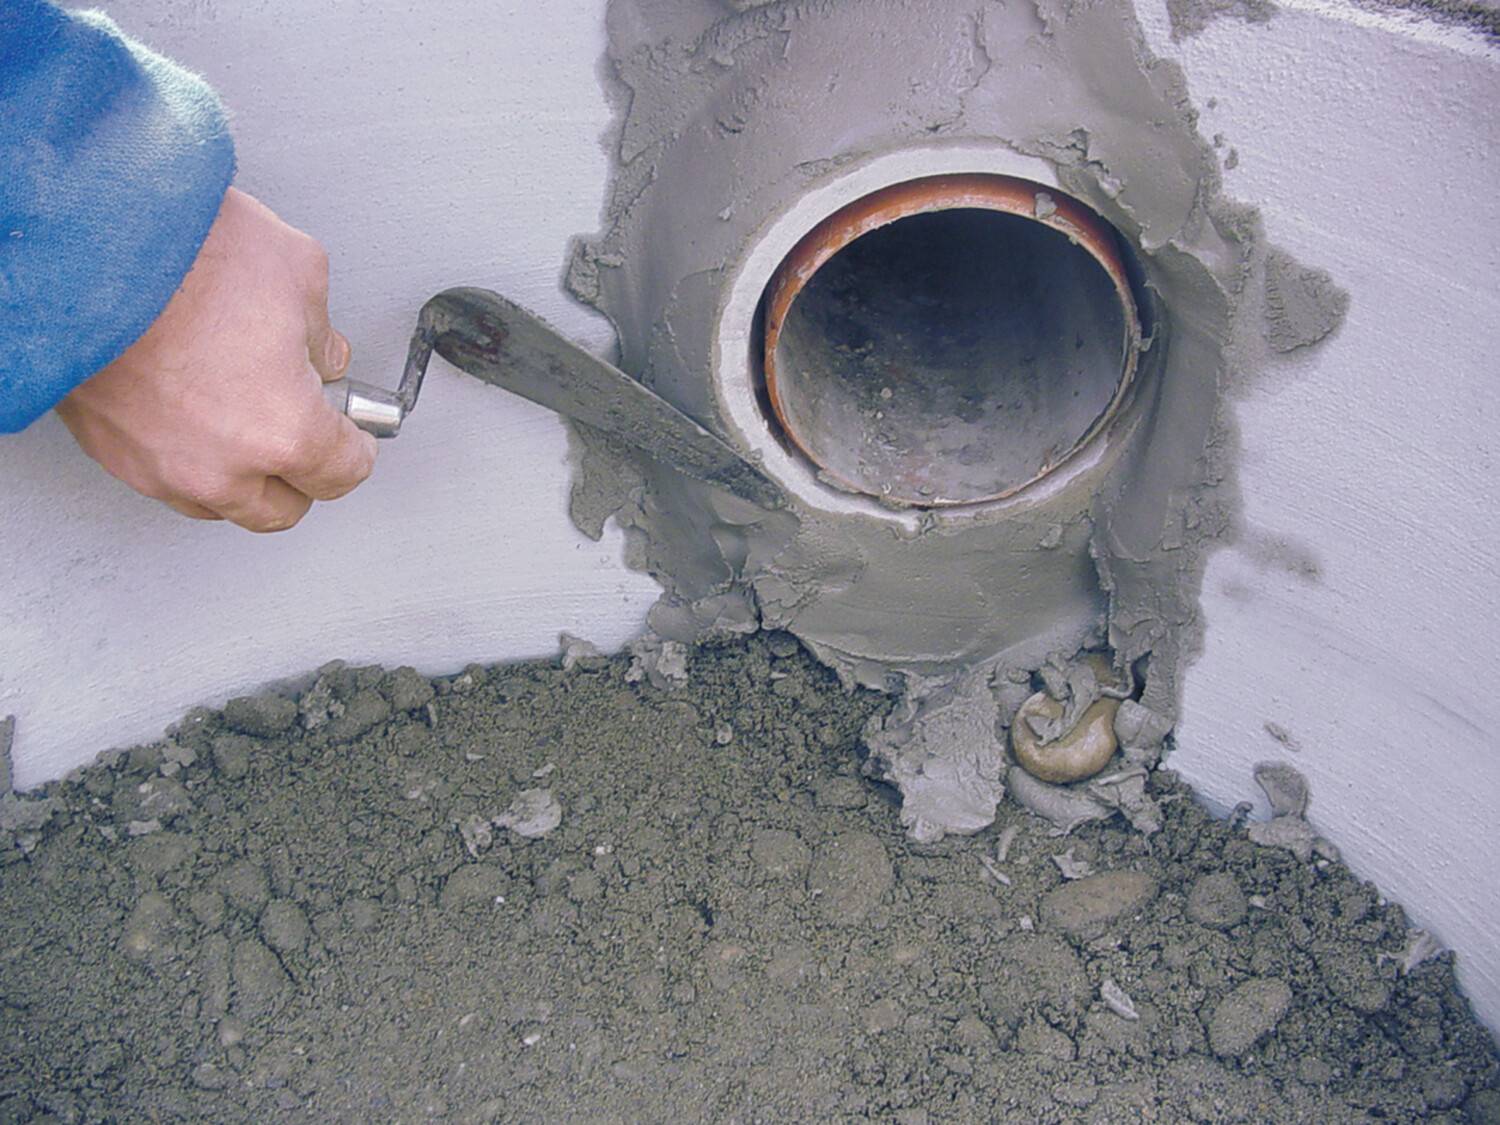 Гидропломба для колодца для защиты чистой колодезной воды. технология заделывания щелей